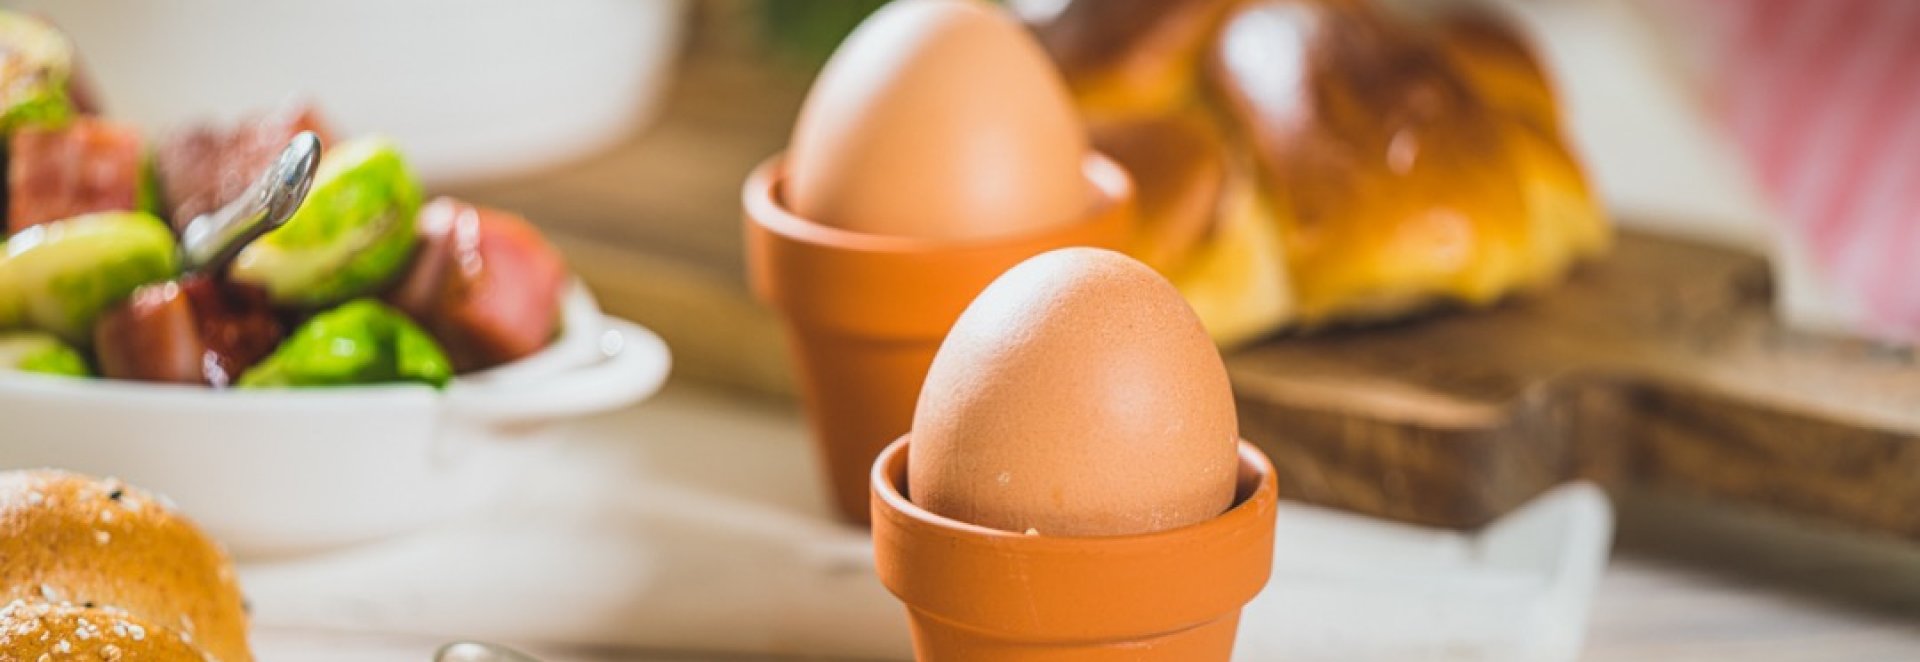 Benefity chytrých (IQ vejce) a cereálních vajec